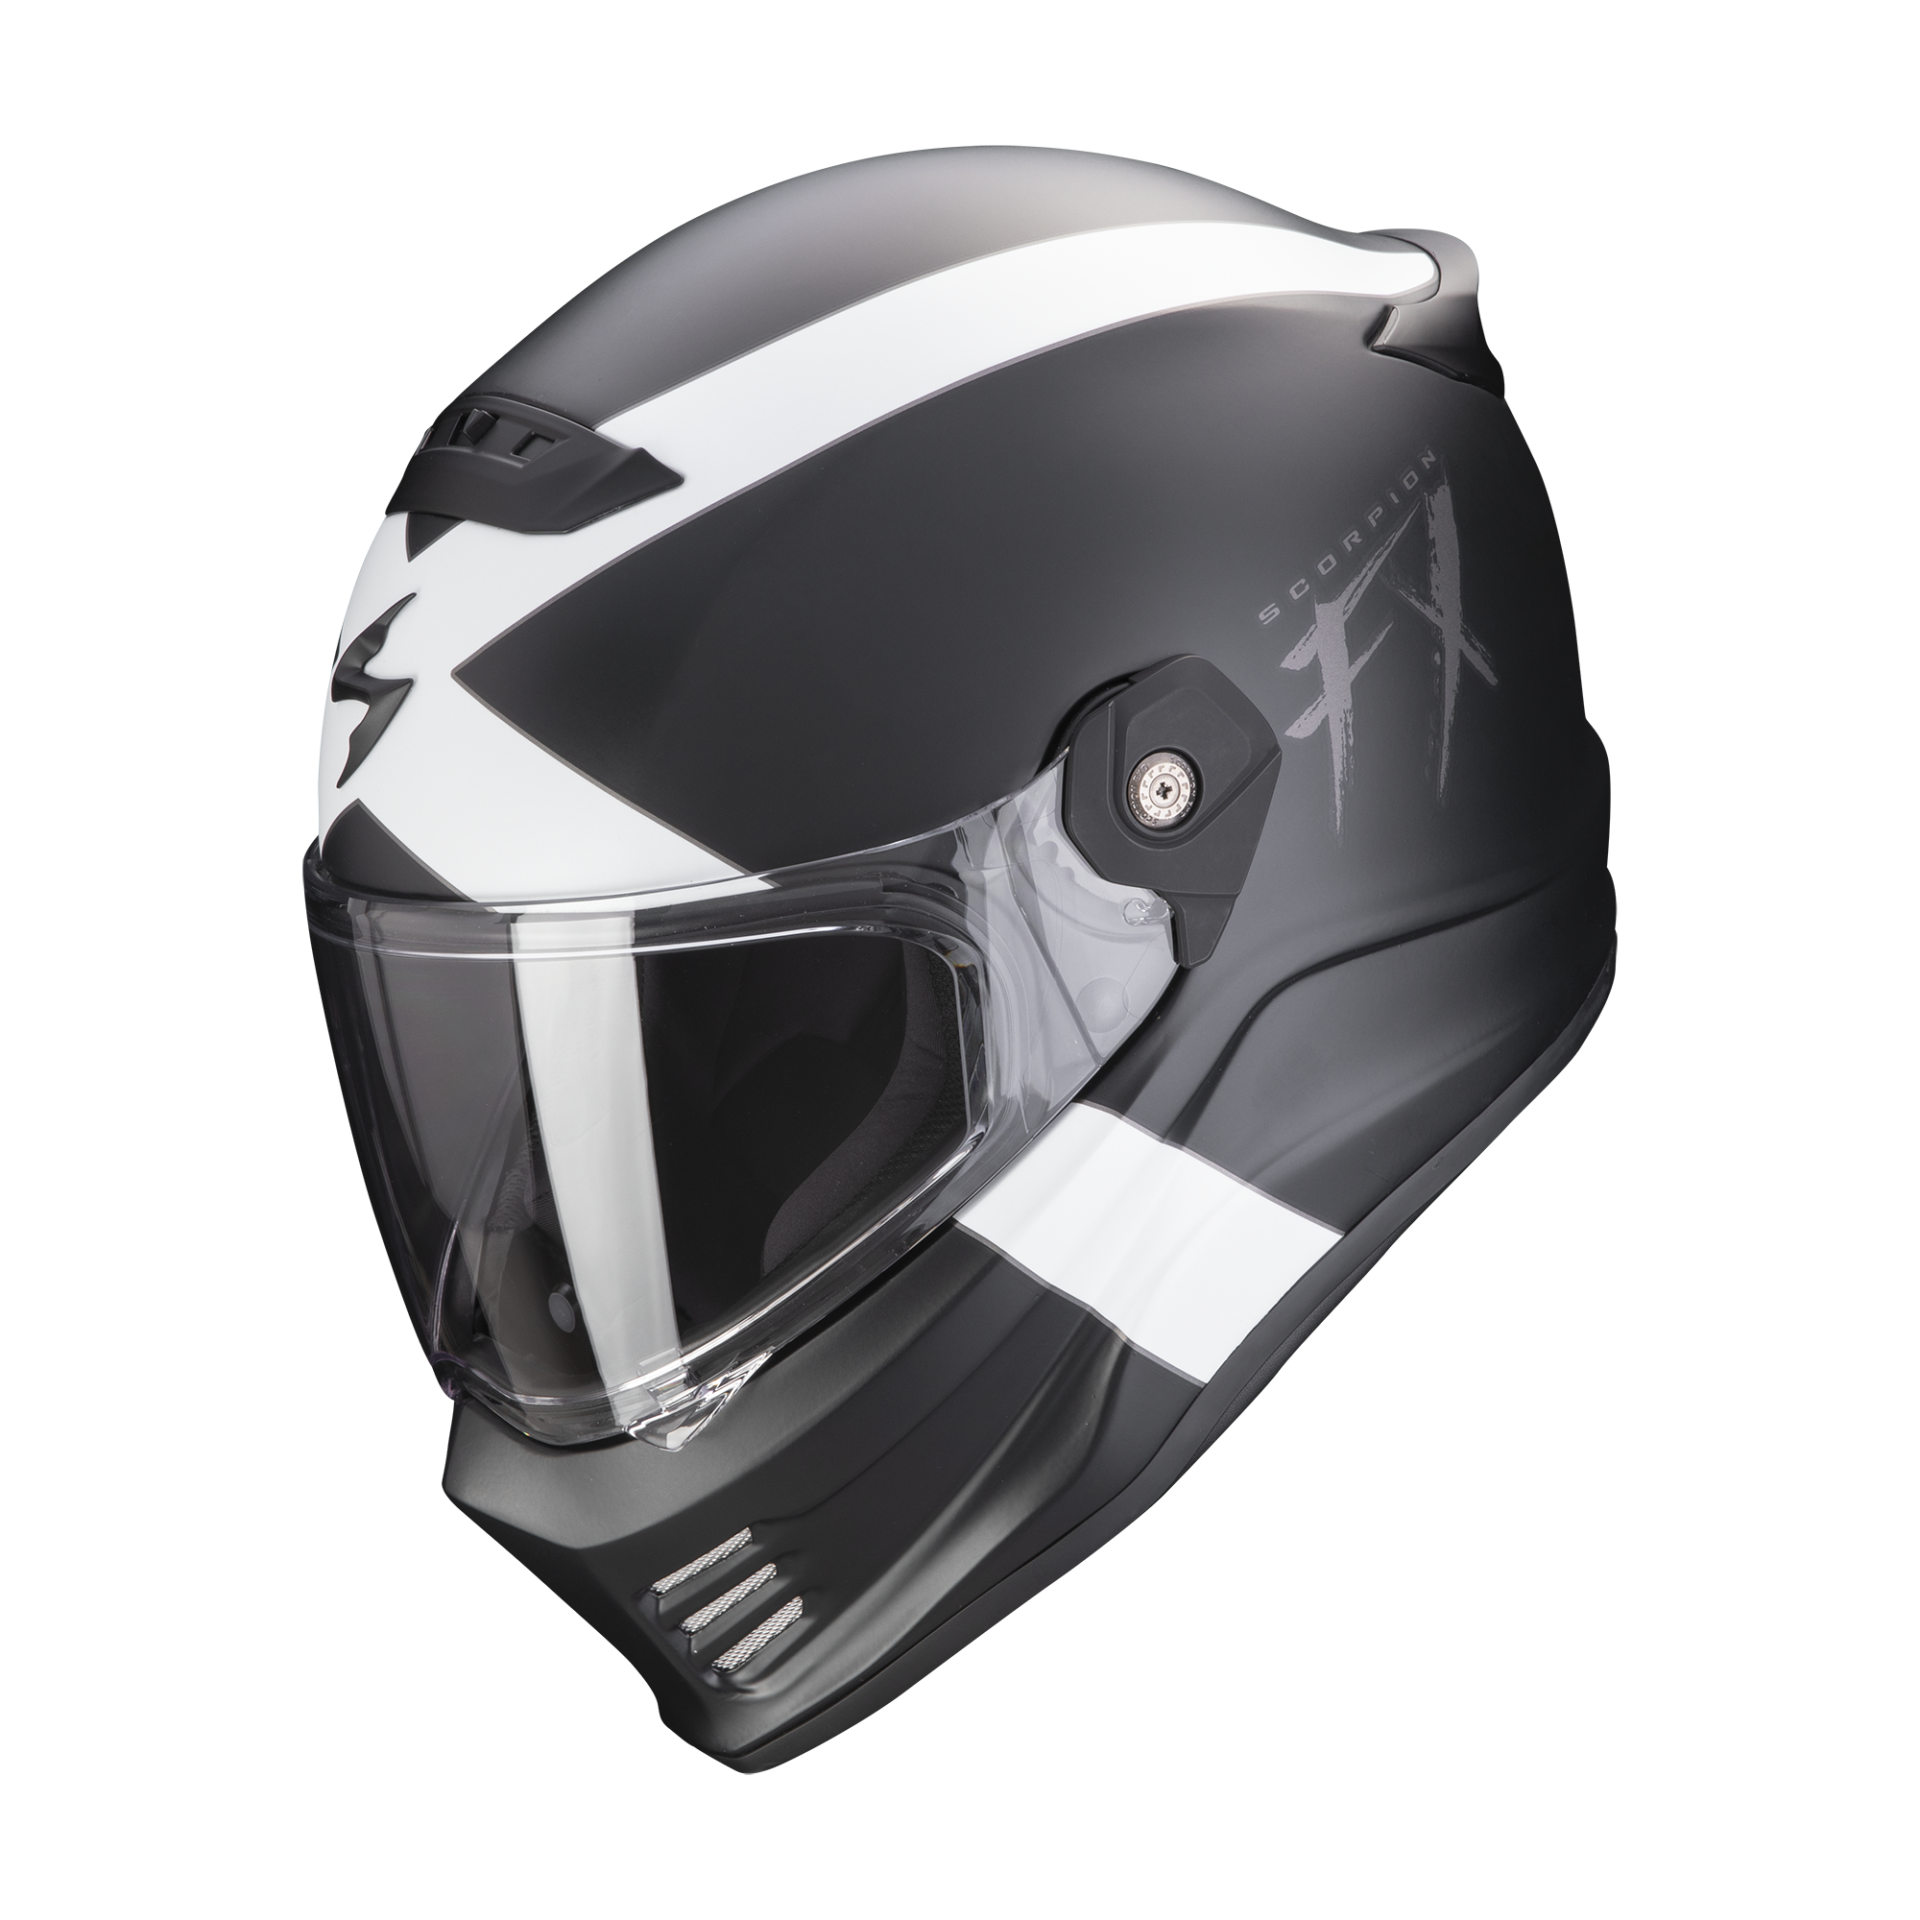 Scorpion Covert FX Retro-Inspired Helmet Breaks Cover 